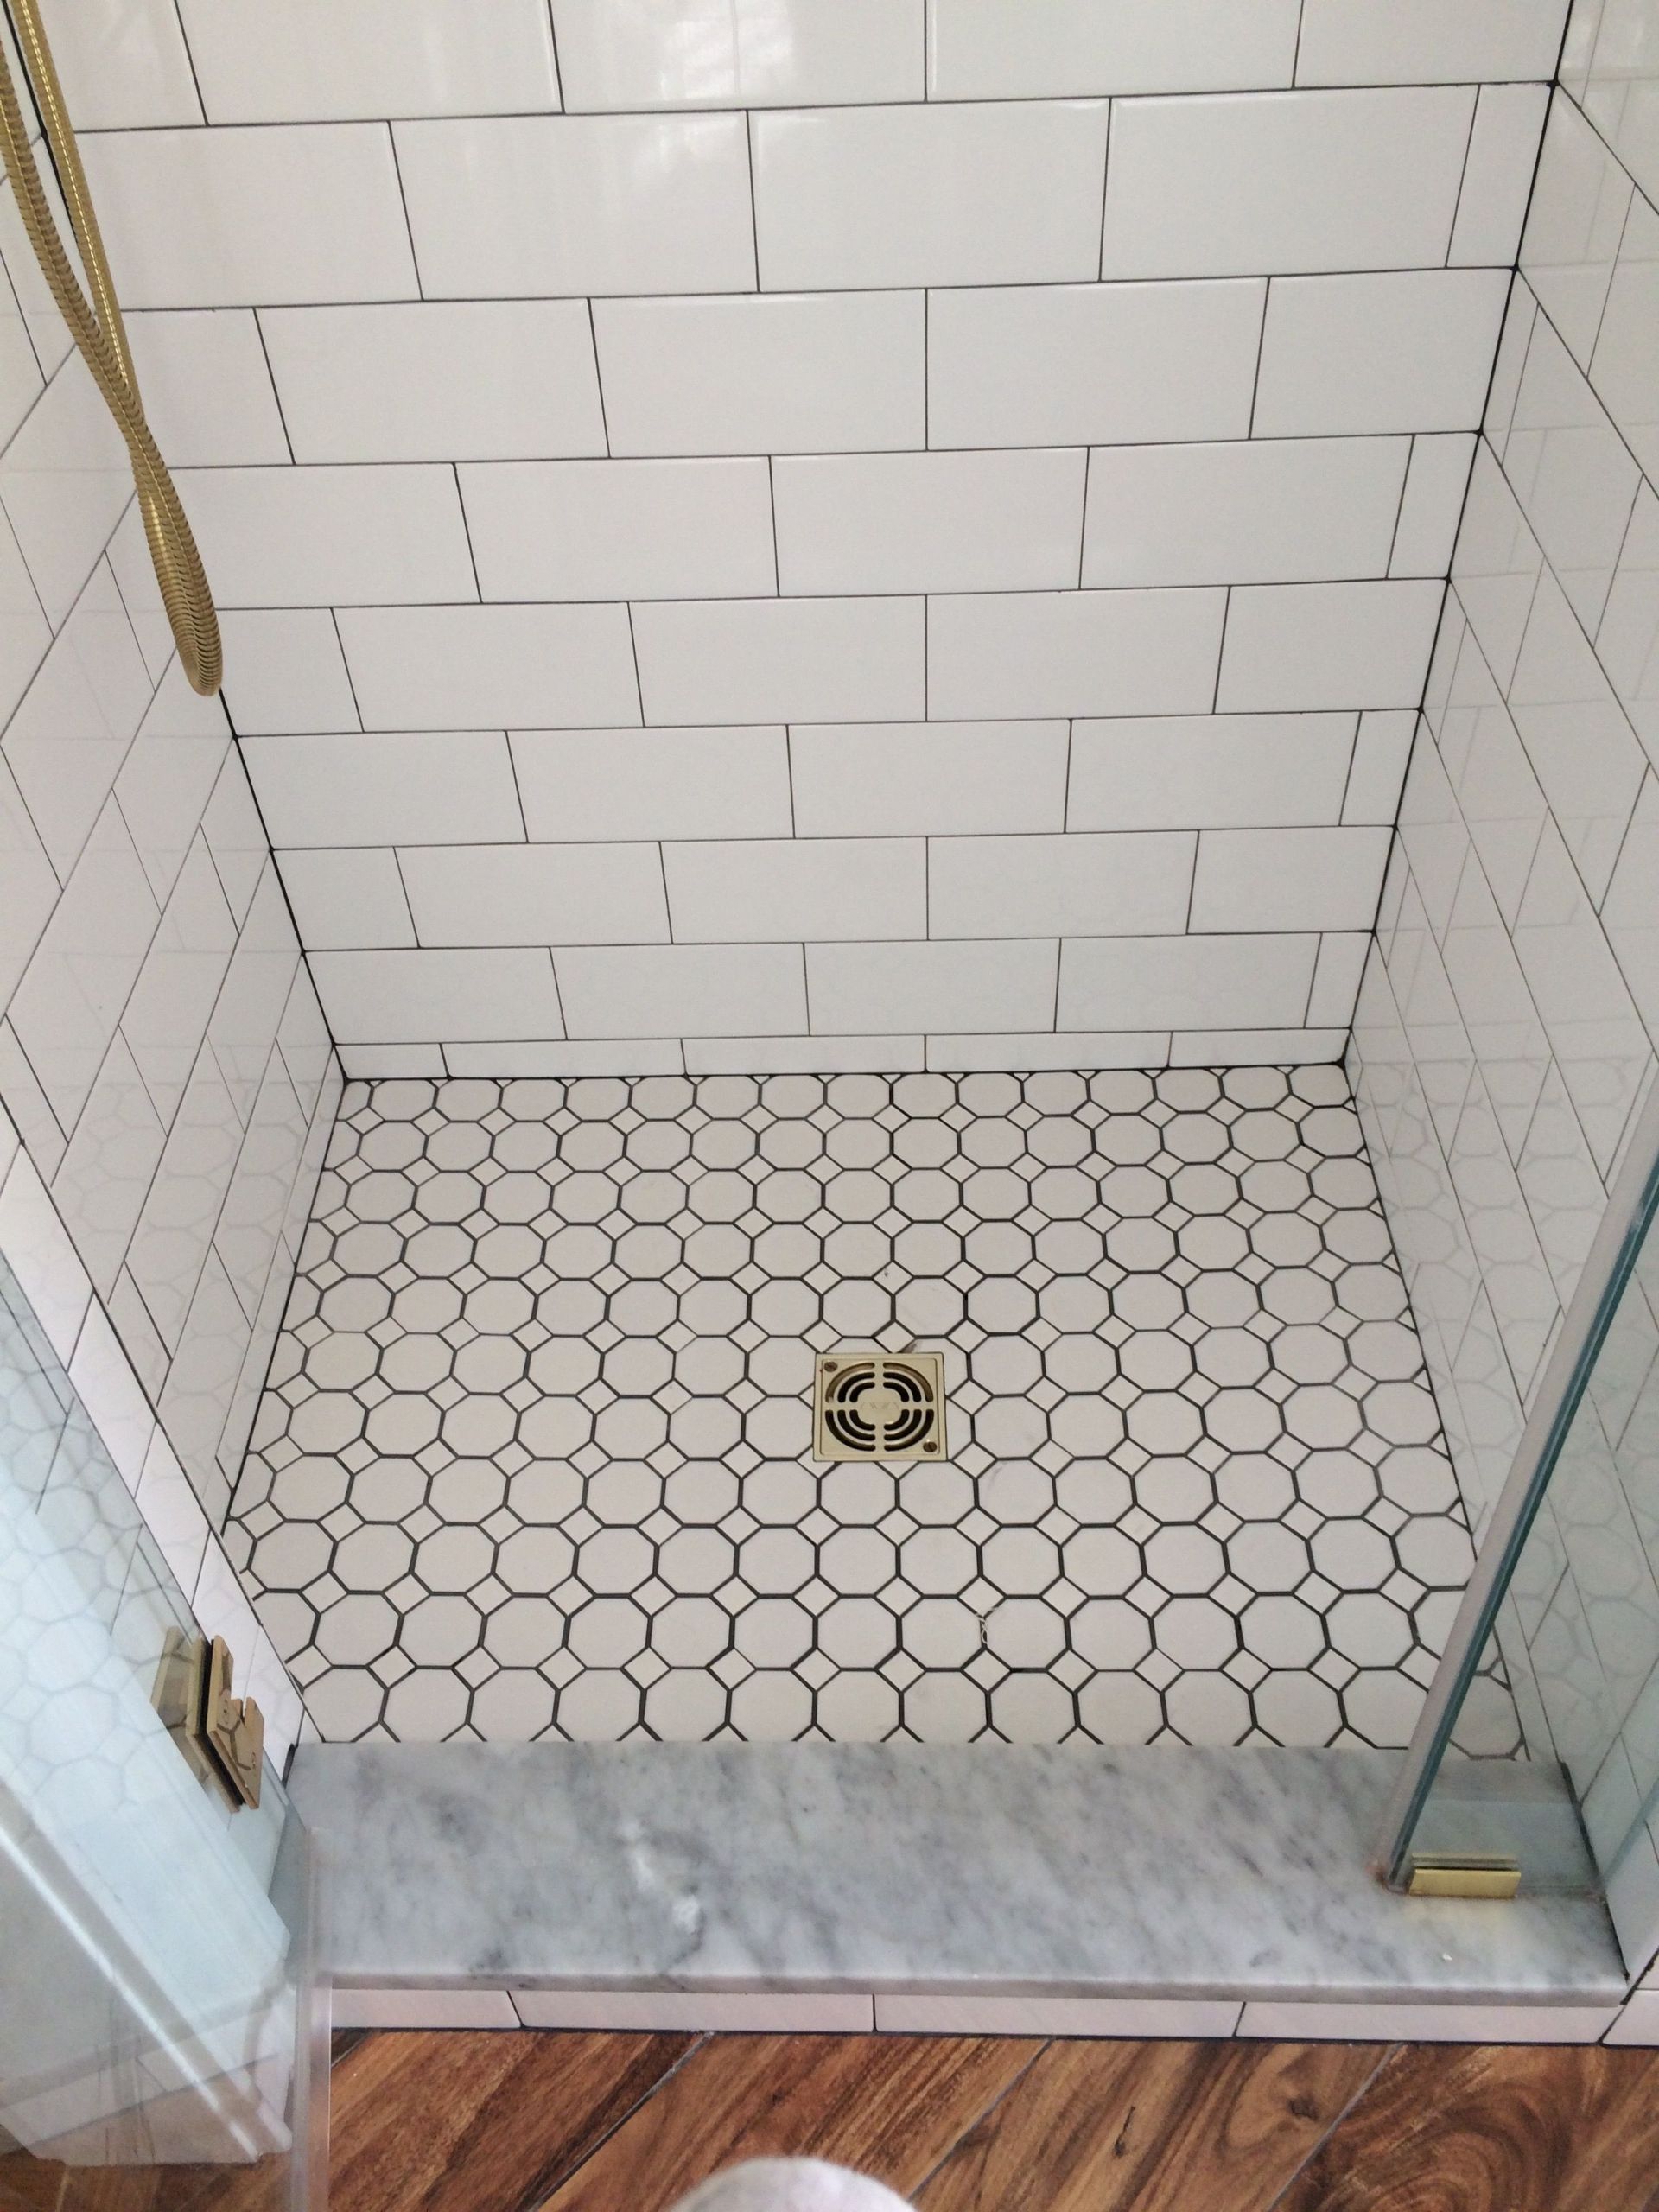 Octagon Bathroom Tile
 farmhouse bathroom shower floor octagon tiles